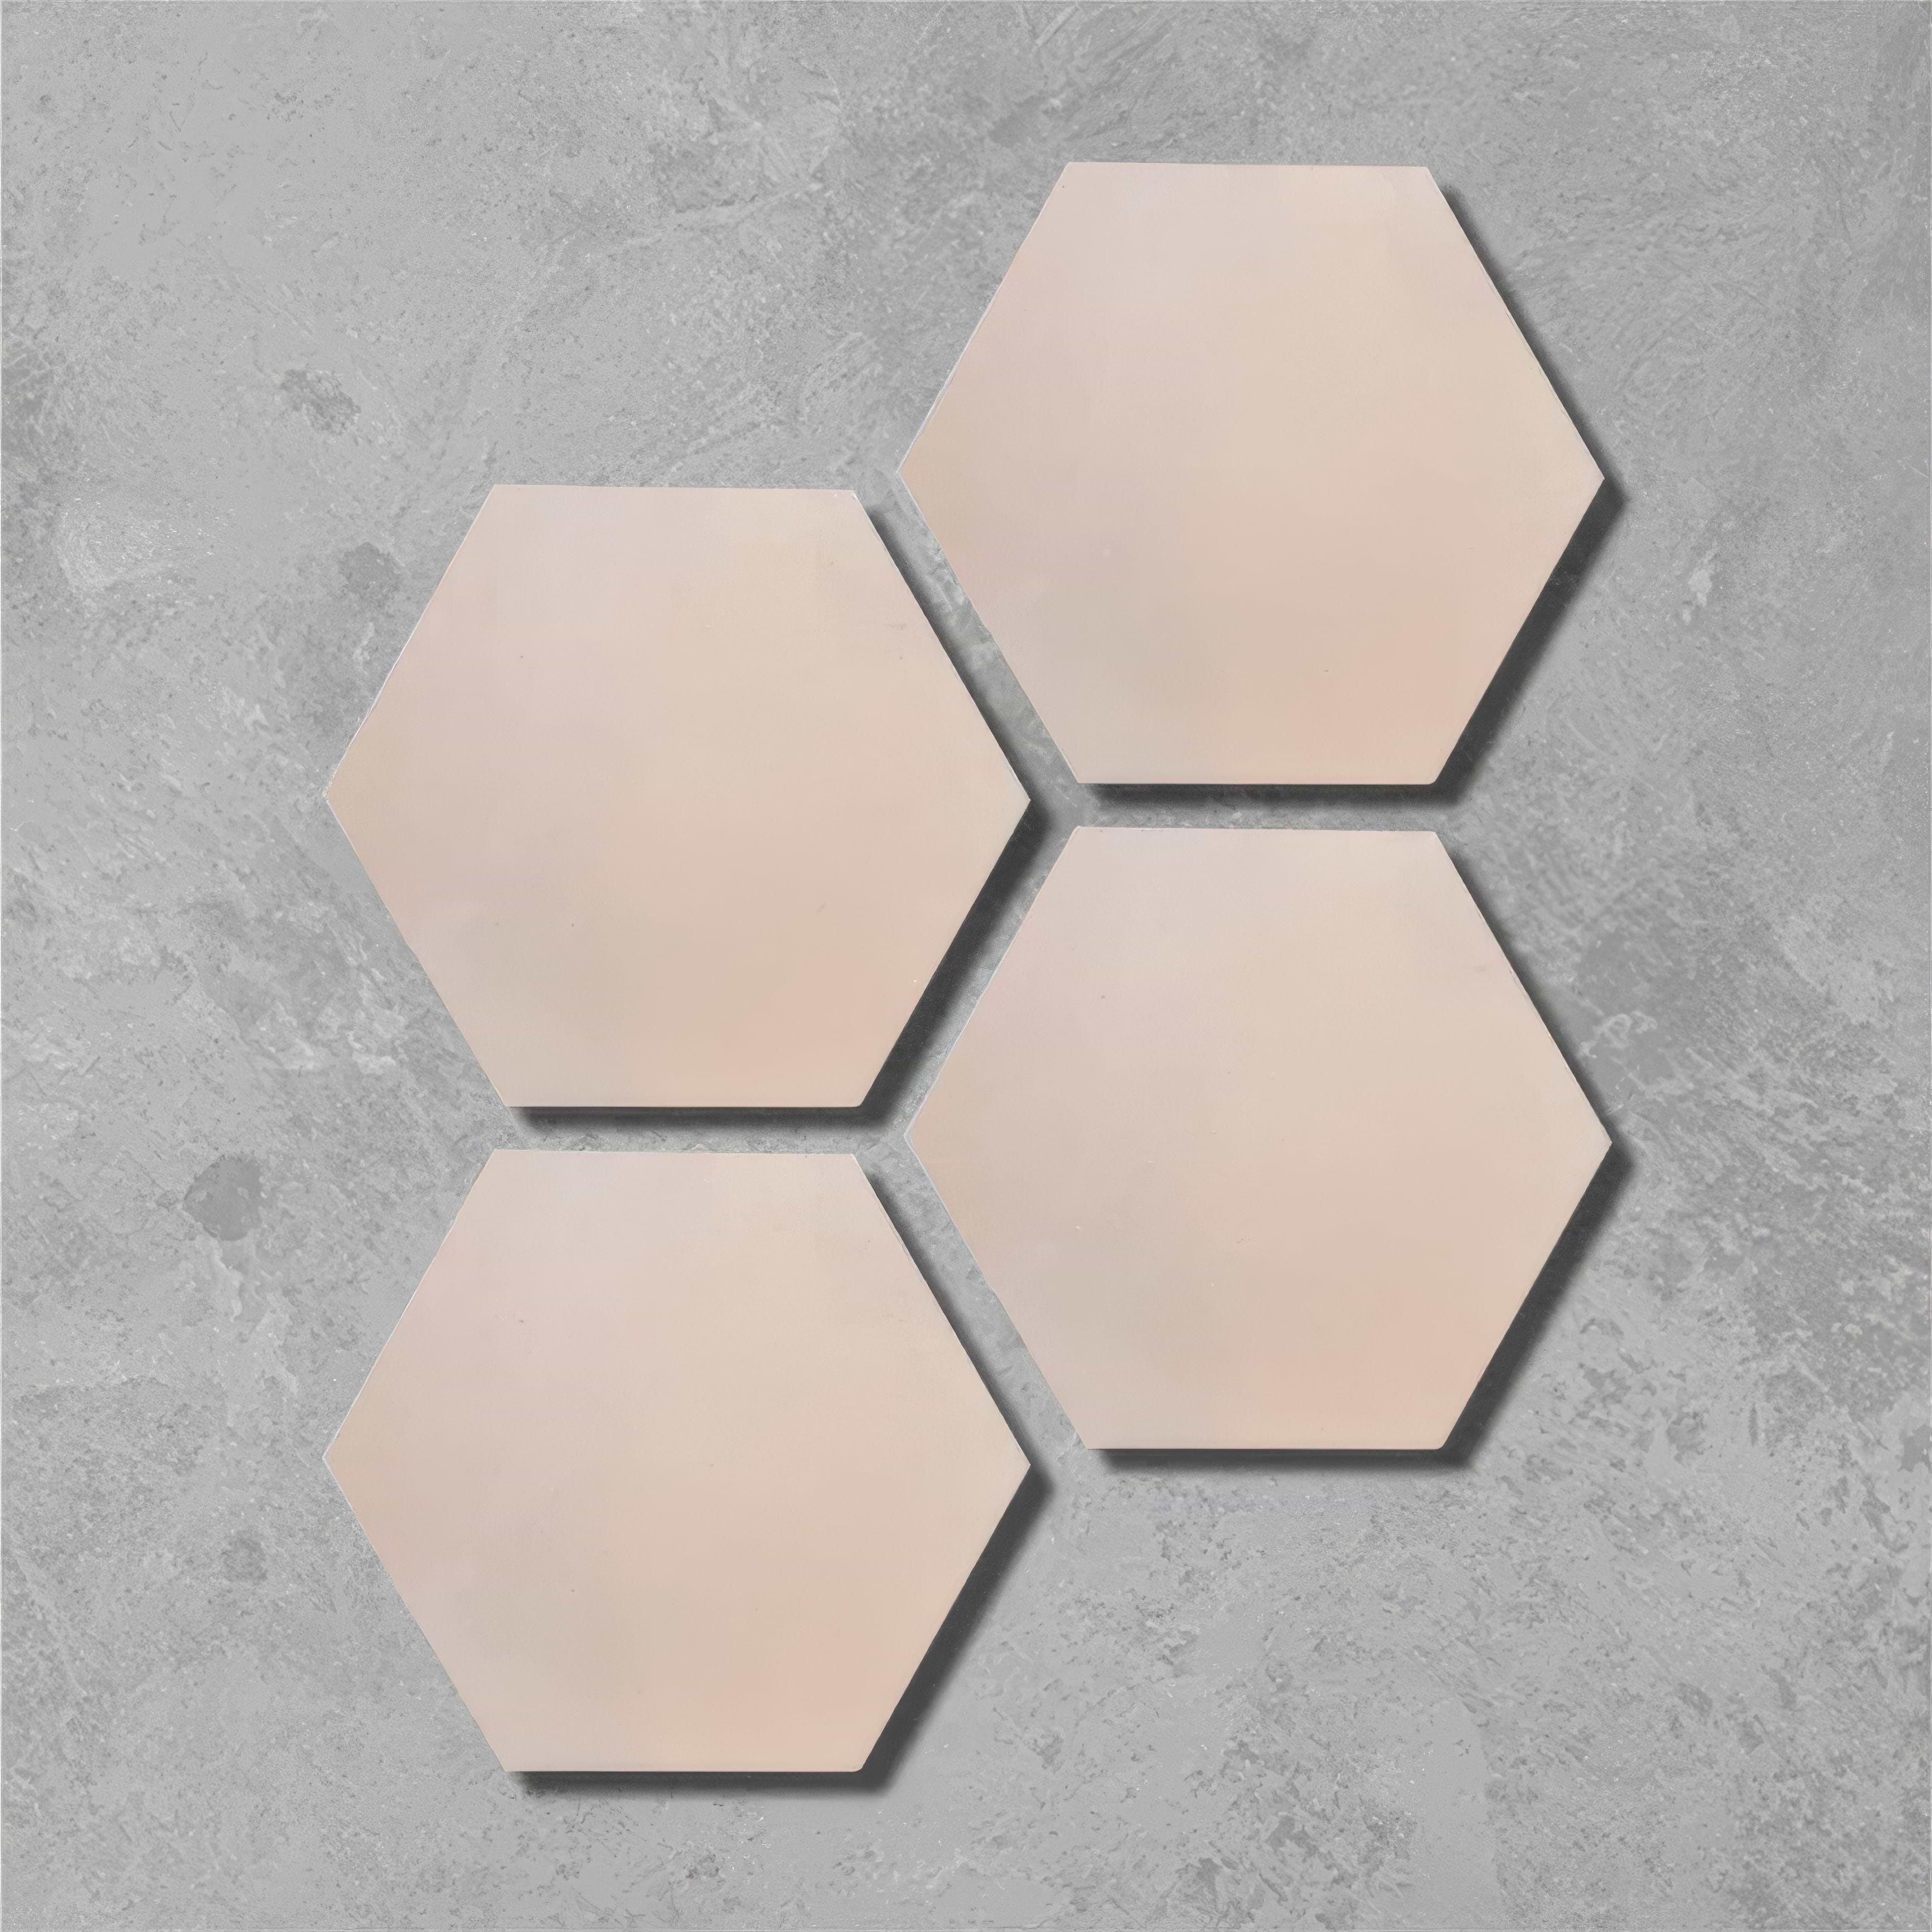 Mandarin Orange Hexagonal Tile - Hyperion Tiles